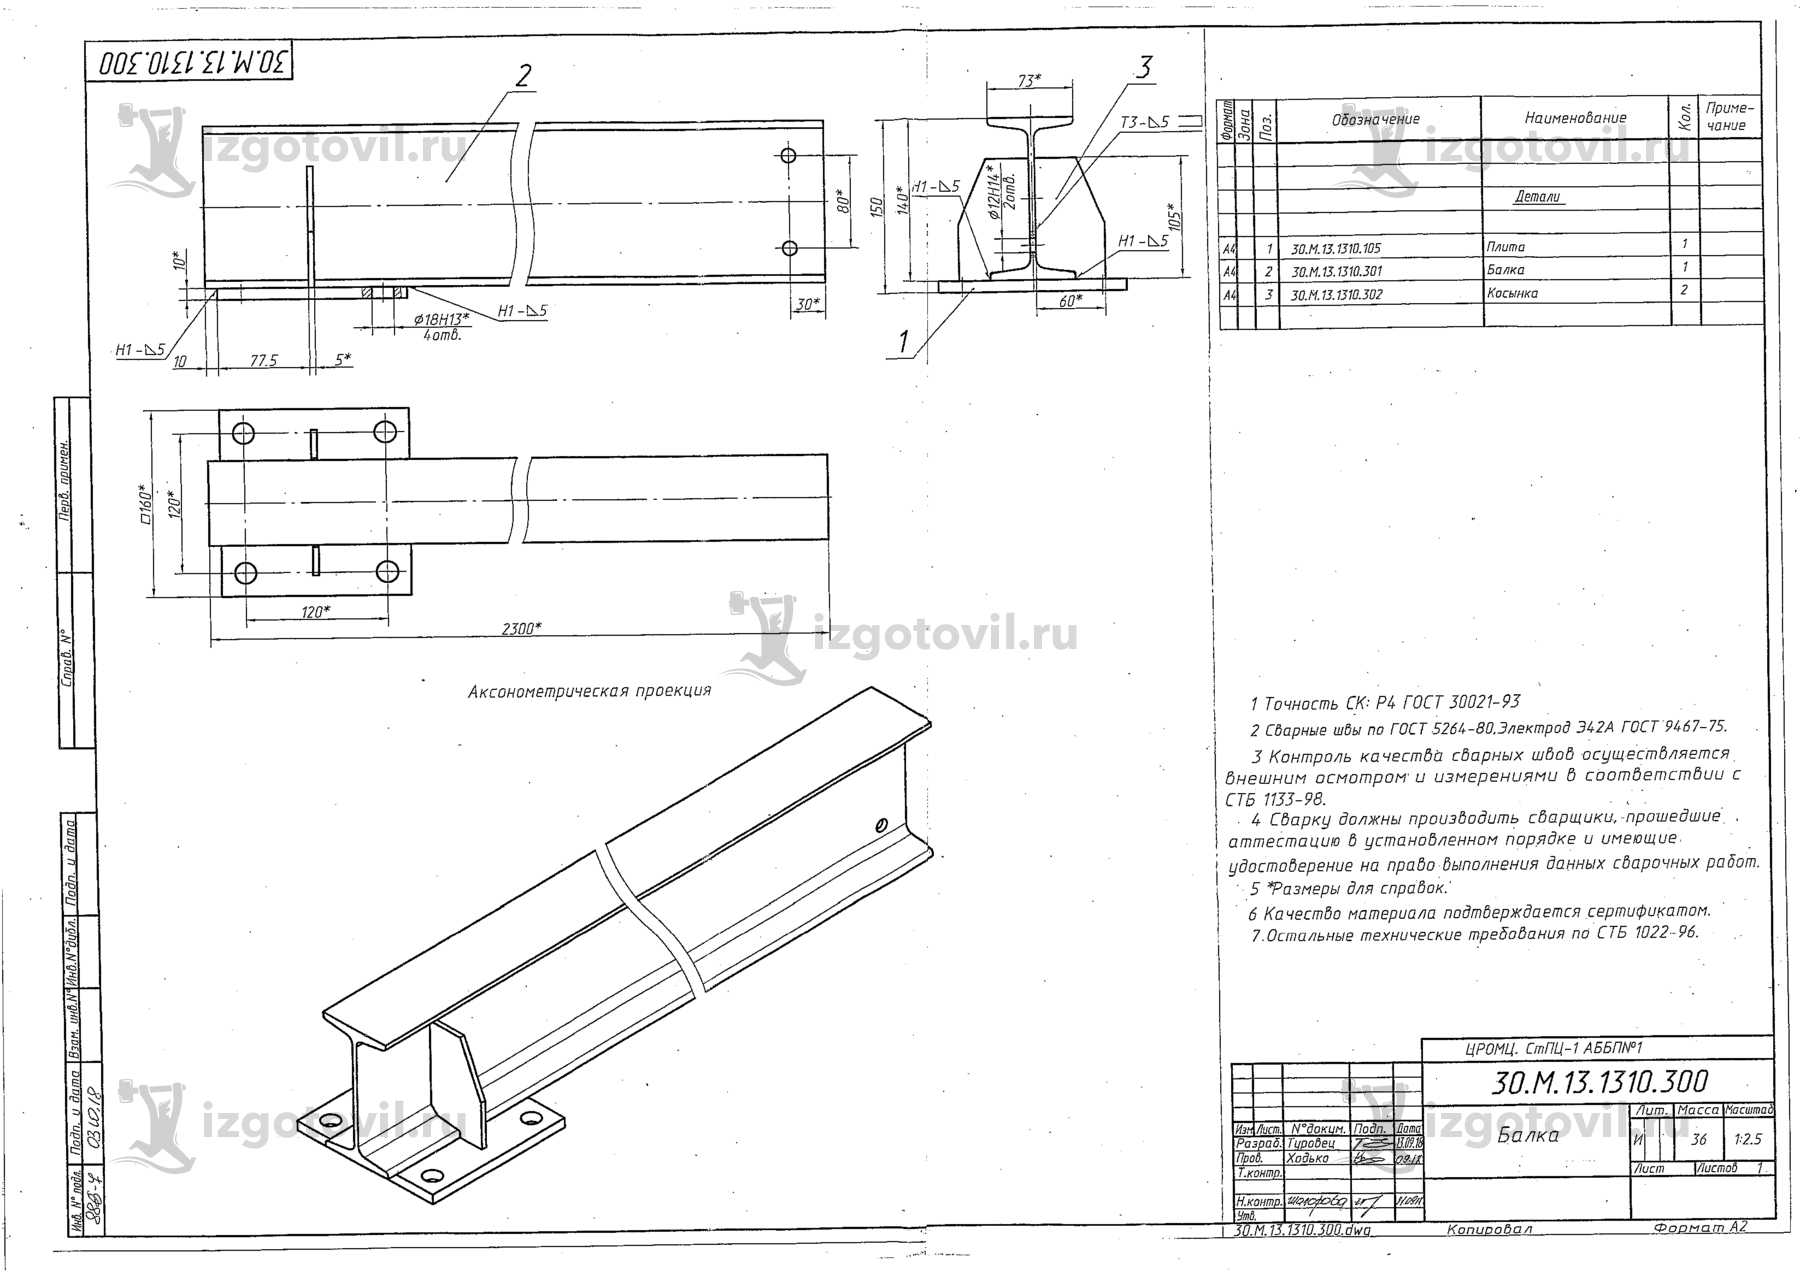 Изготовление деталей оборудования (приспособление для демонтажа(монтажа) накопителей намотки и размотки АББП№1)